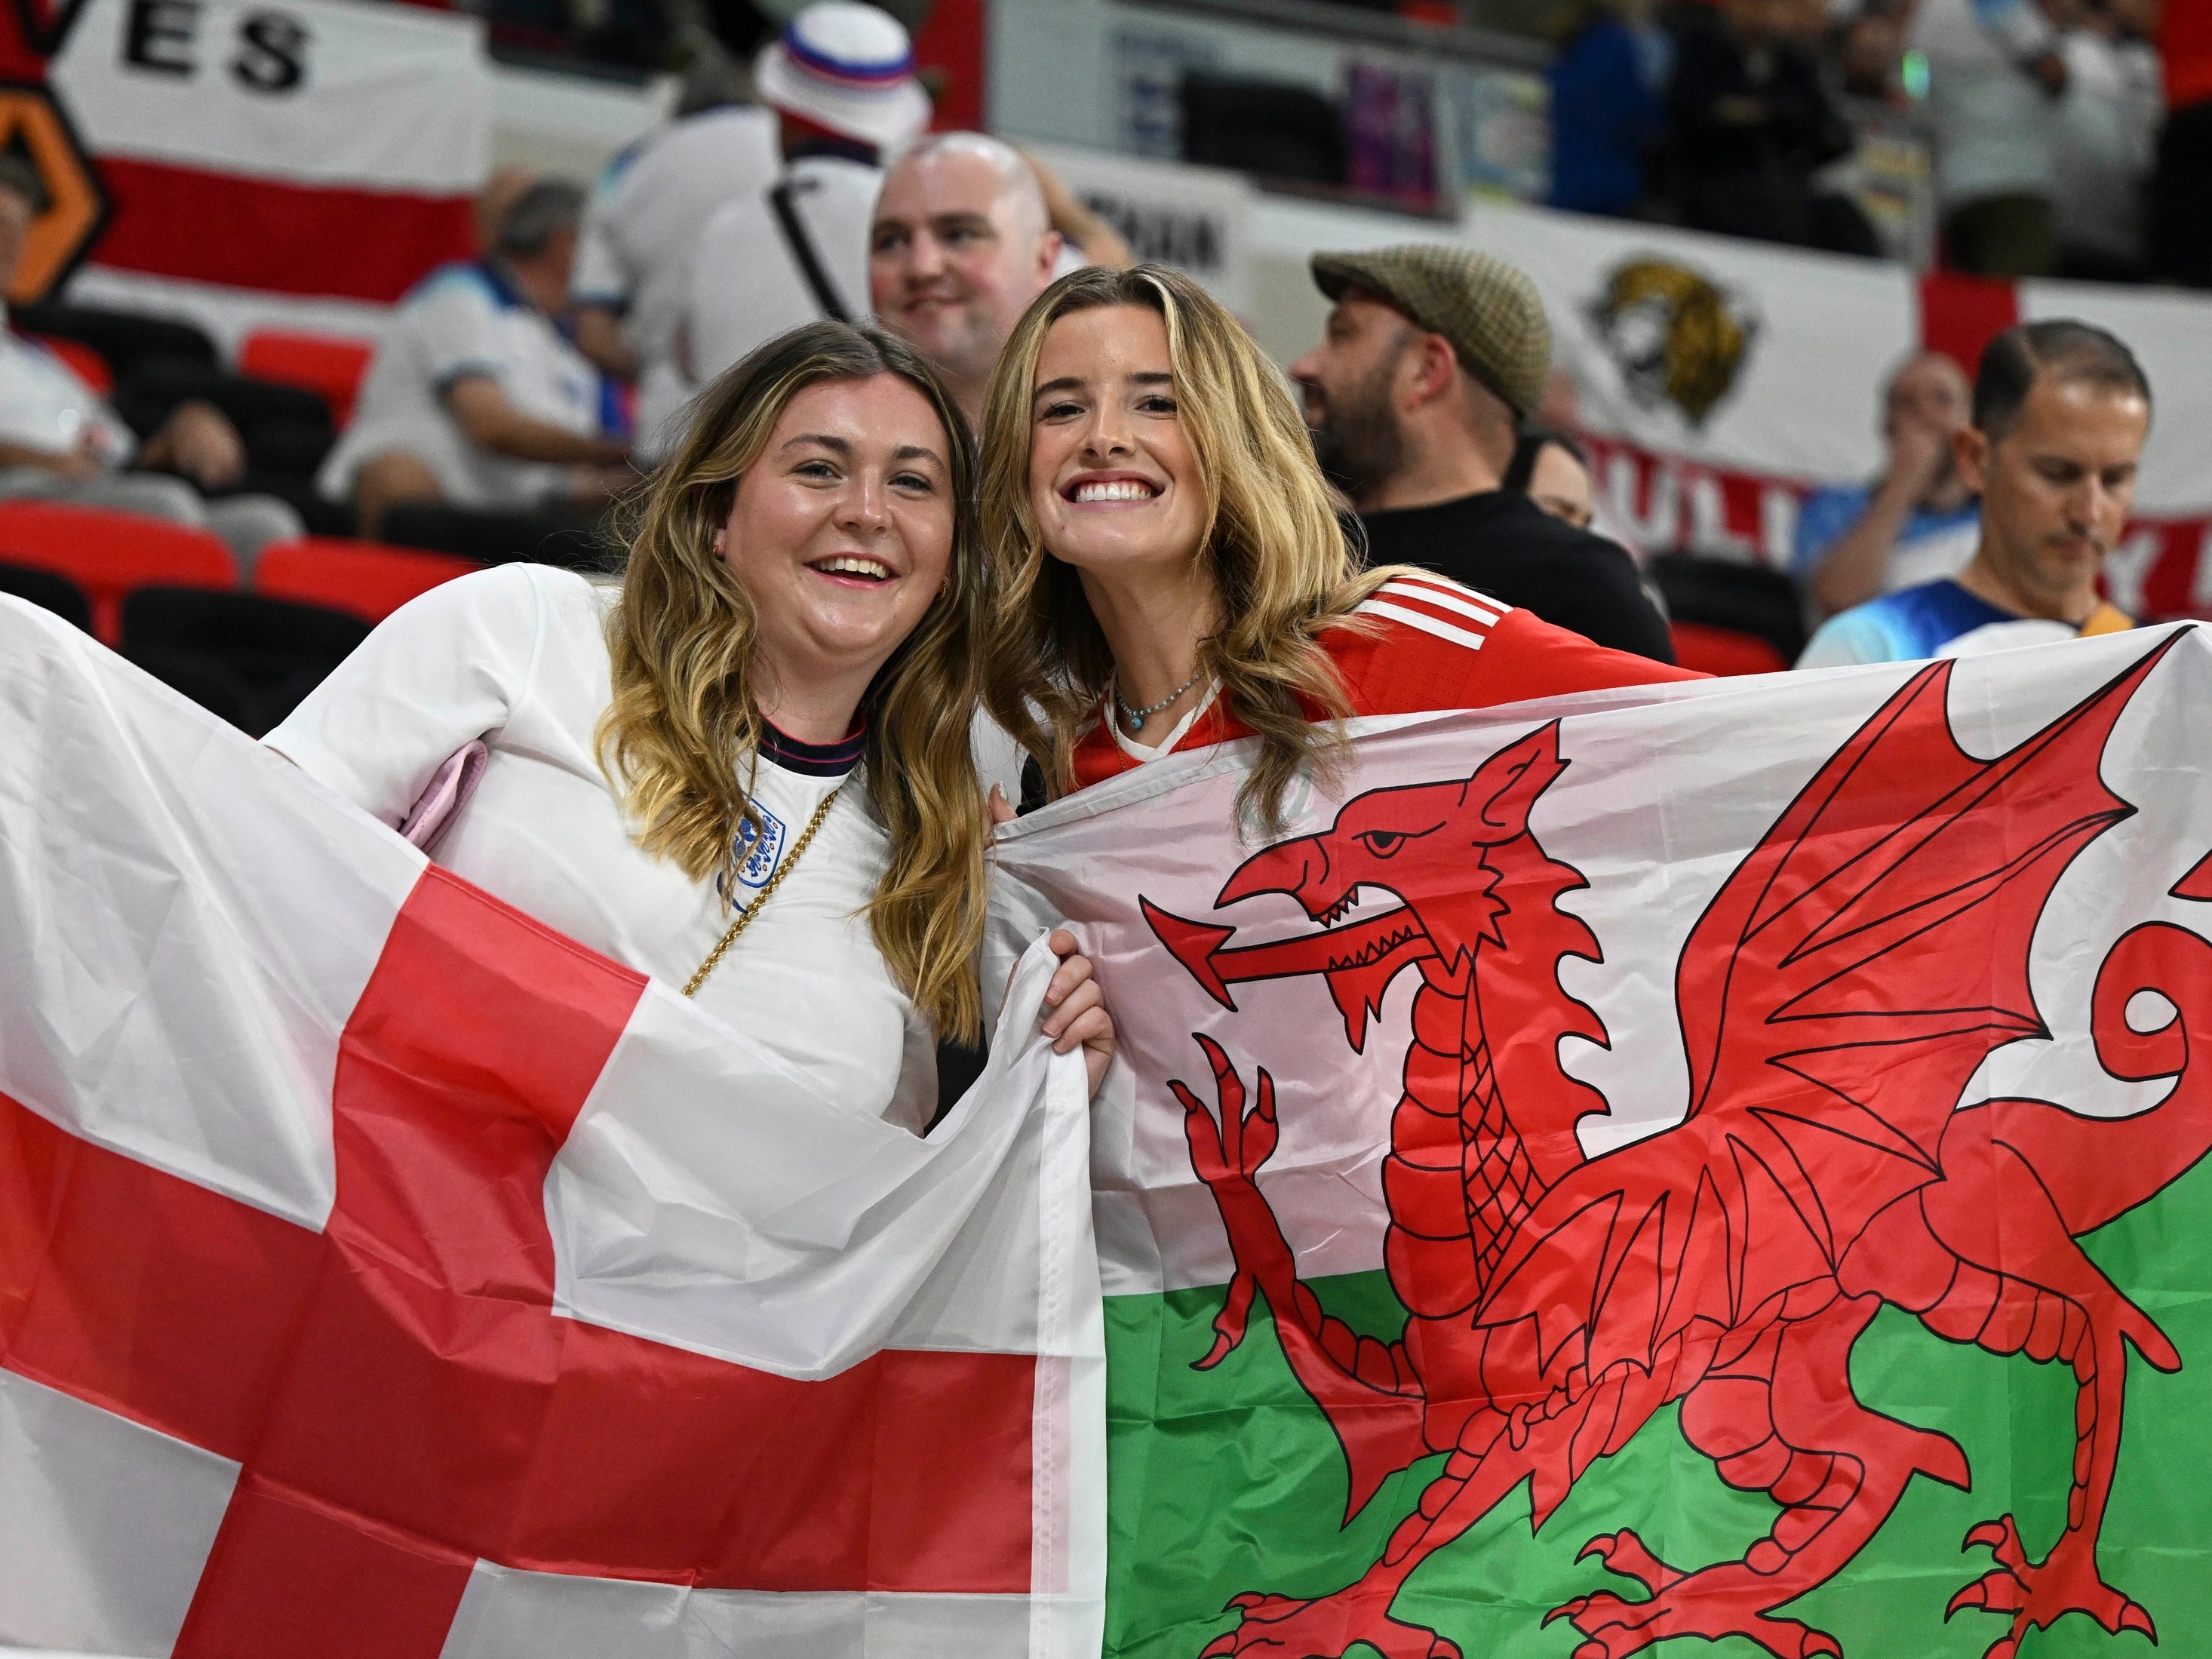 Reino Unido, mas não na Copa: por que Gales joga separado da